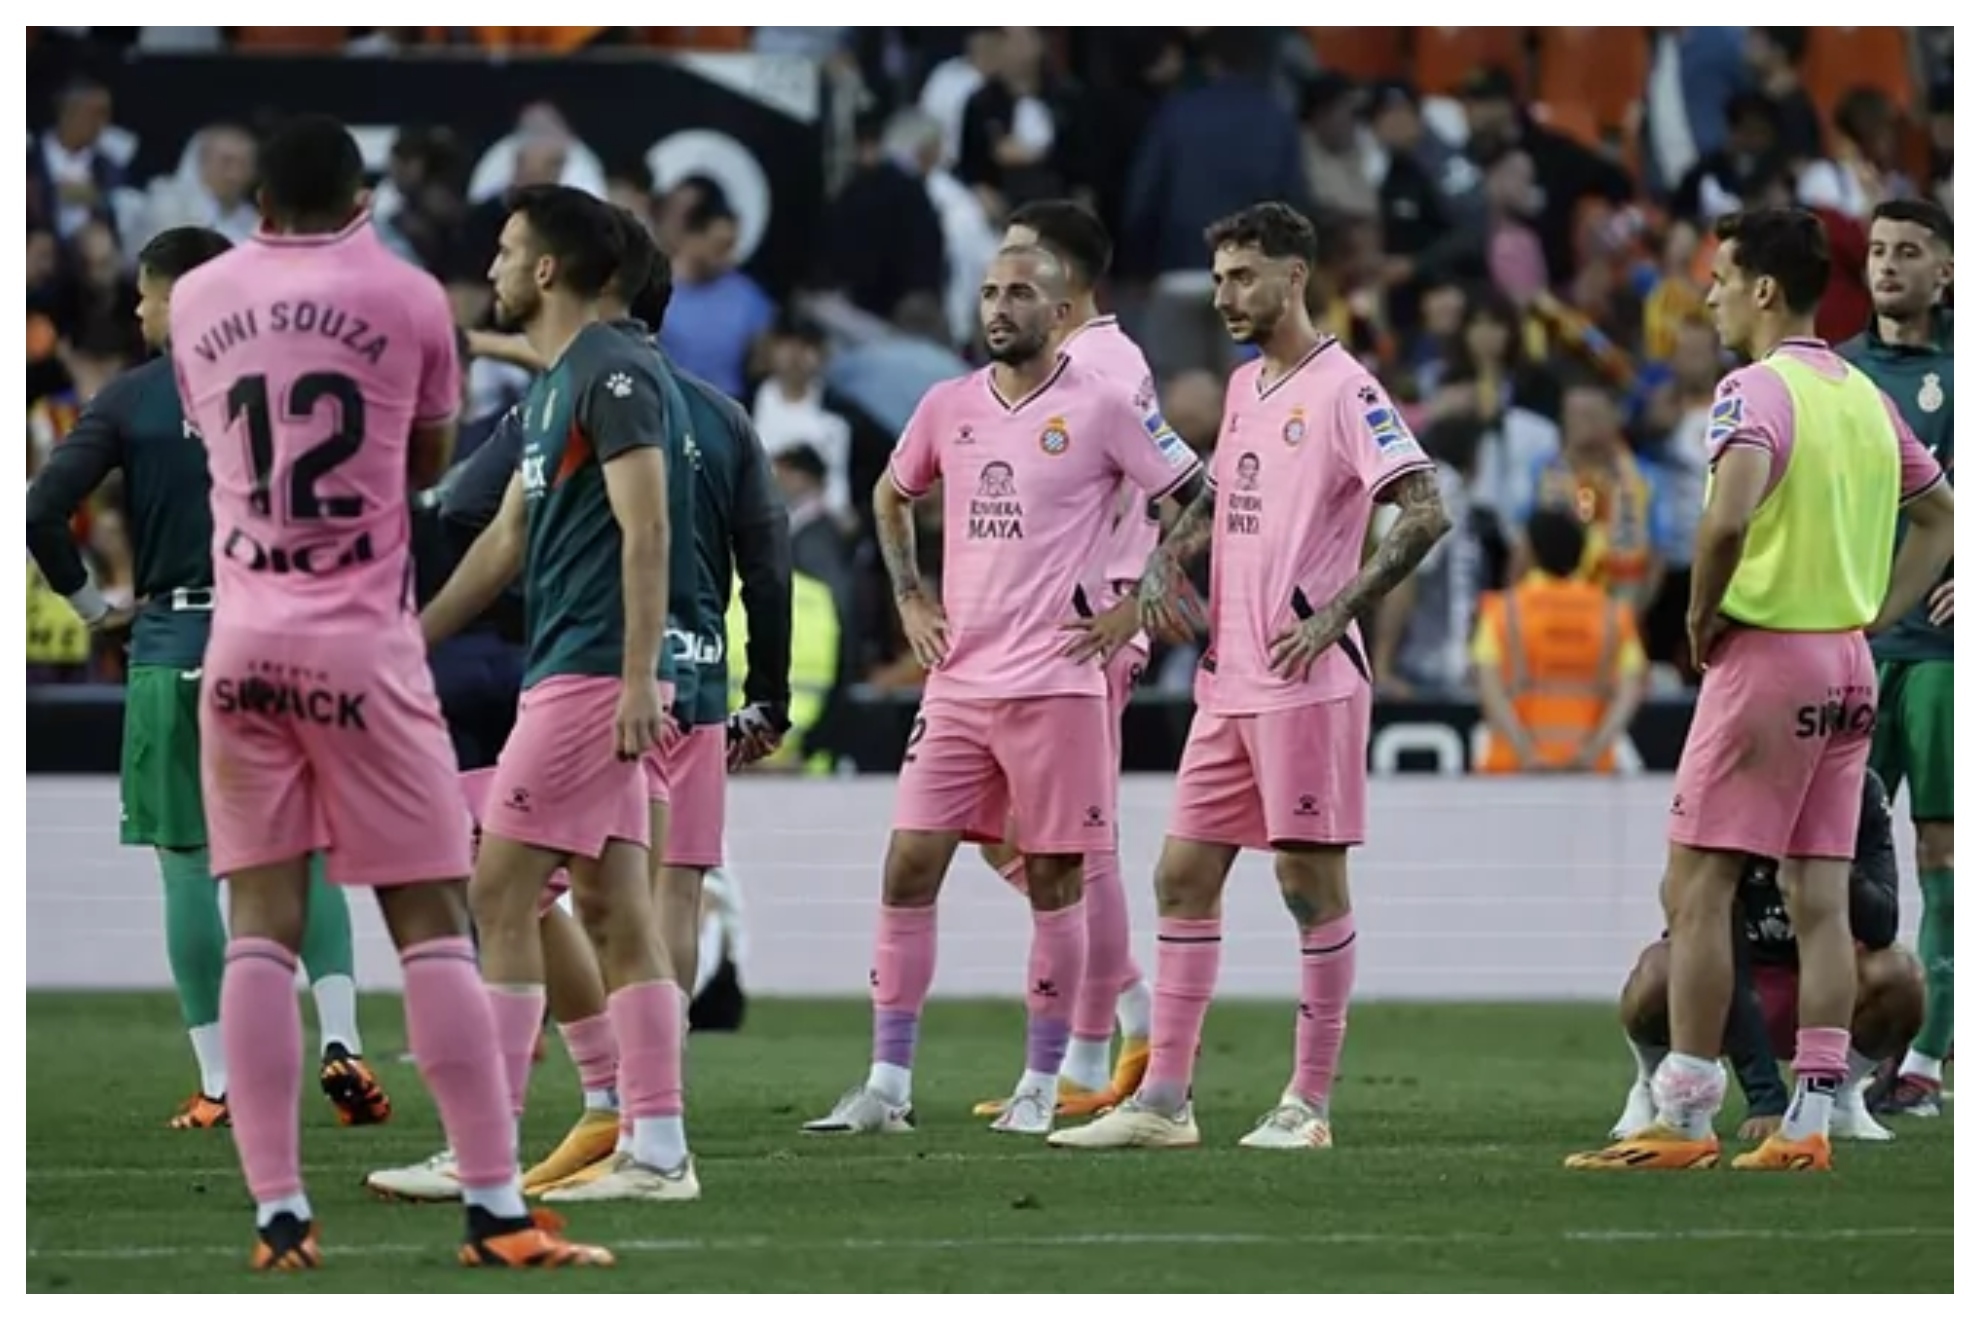 Los jugadores del Espanyol, rotos tras perder ante el Valencia